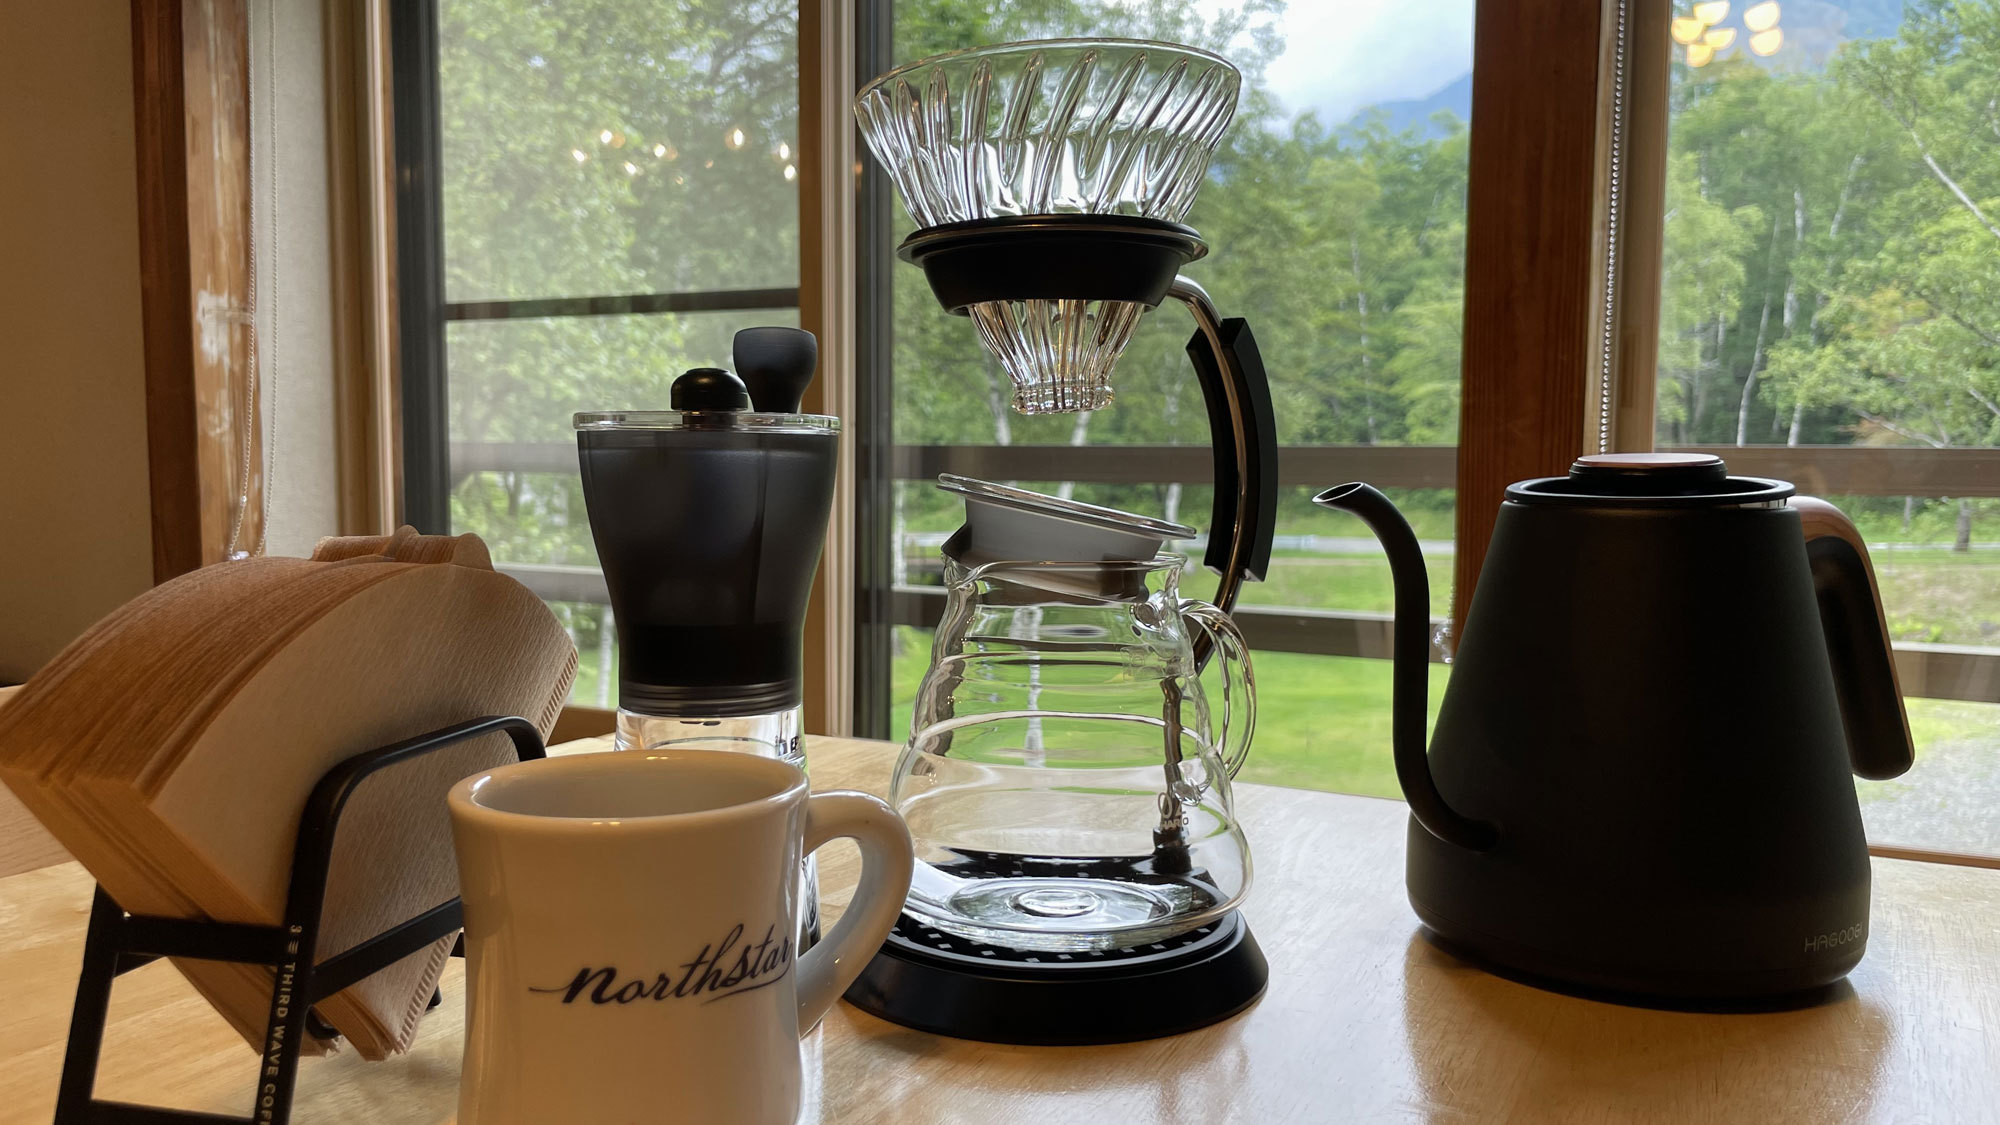 【Mountain View】コーヒーメーカー。窓の外を見ながらゆったりした時間を